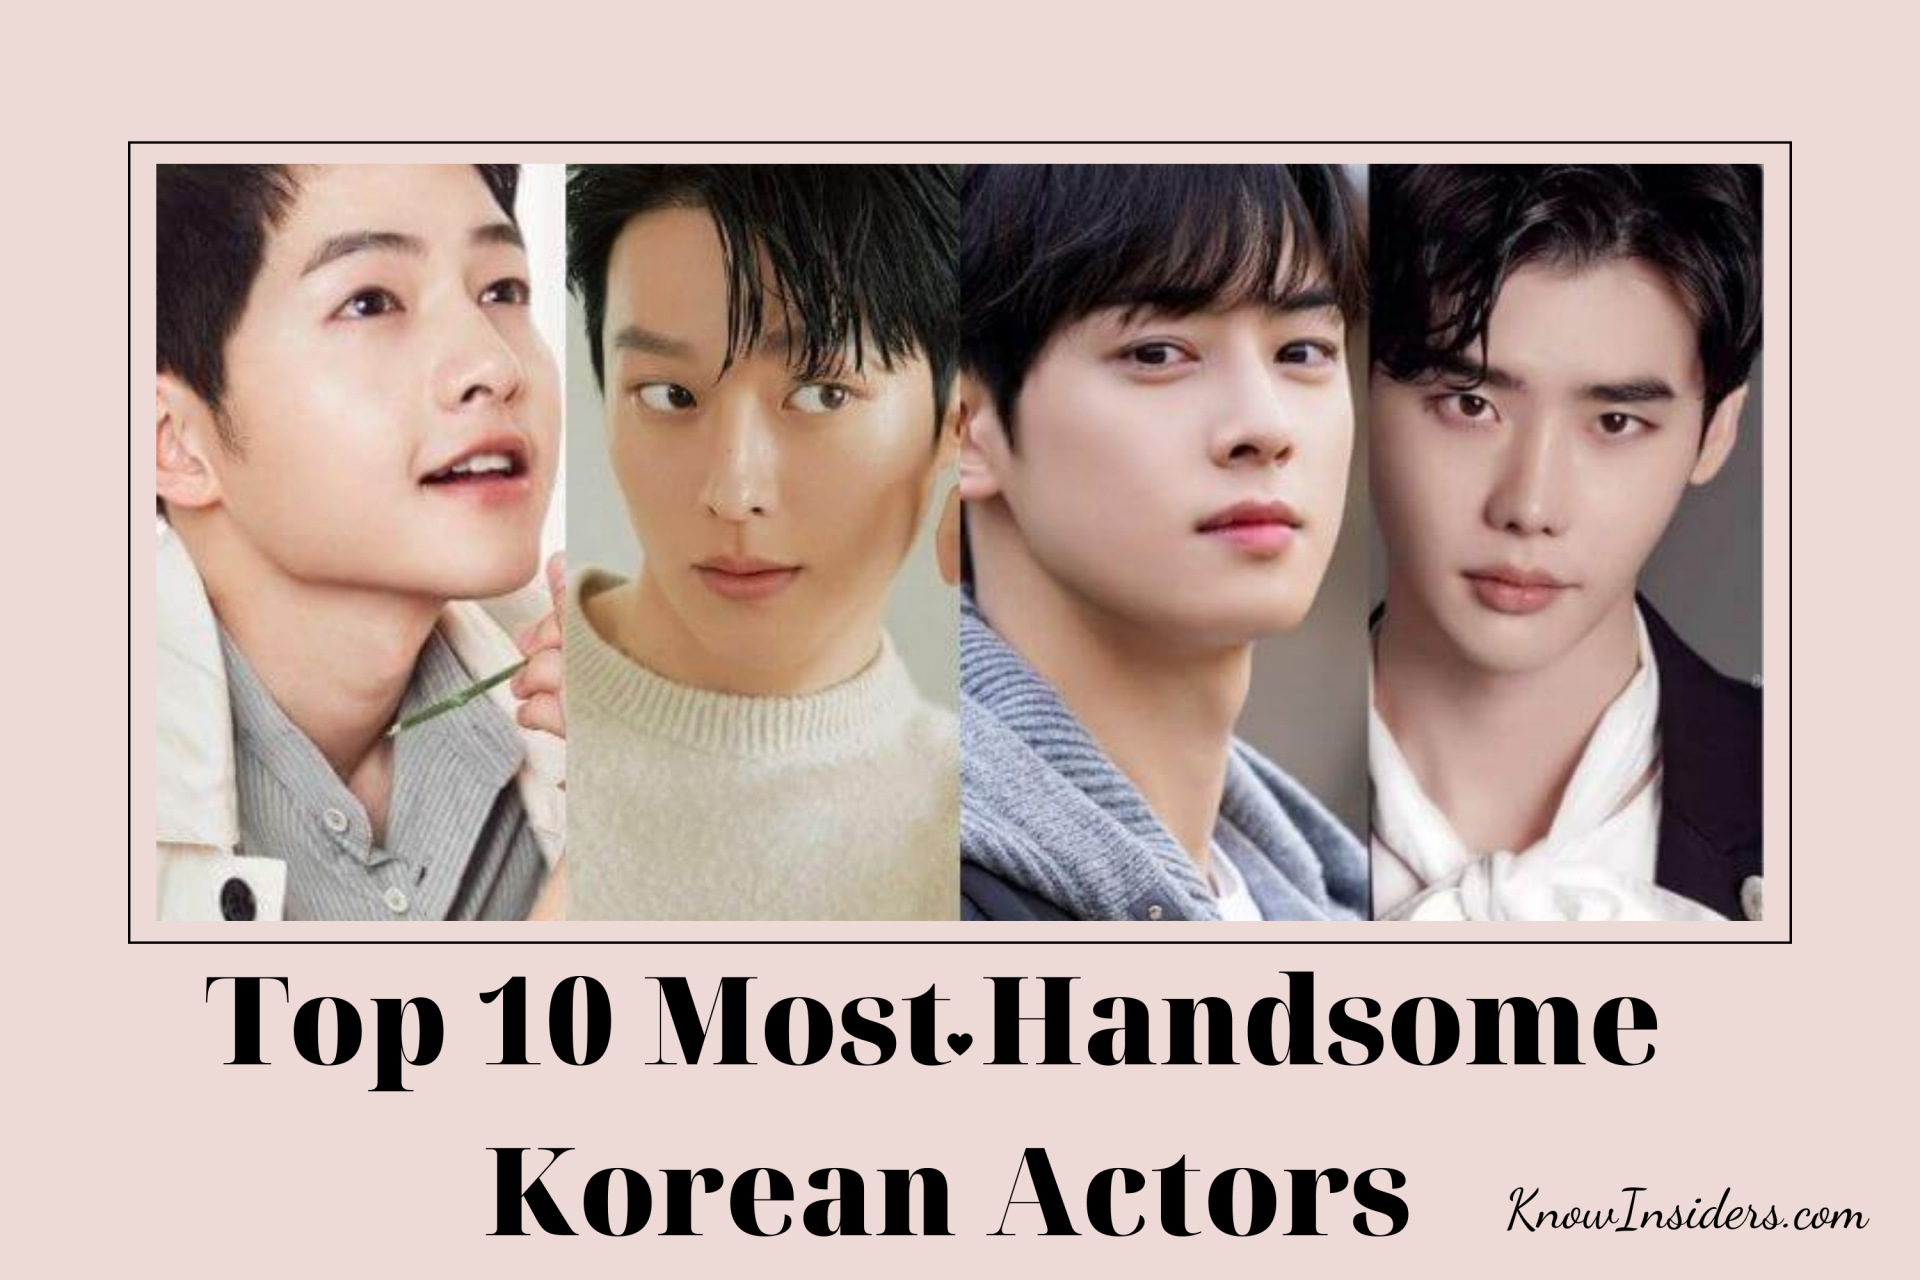 Top 10 Most Handsome Korean Actors - Updated